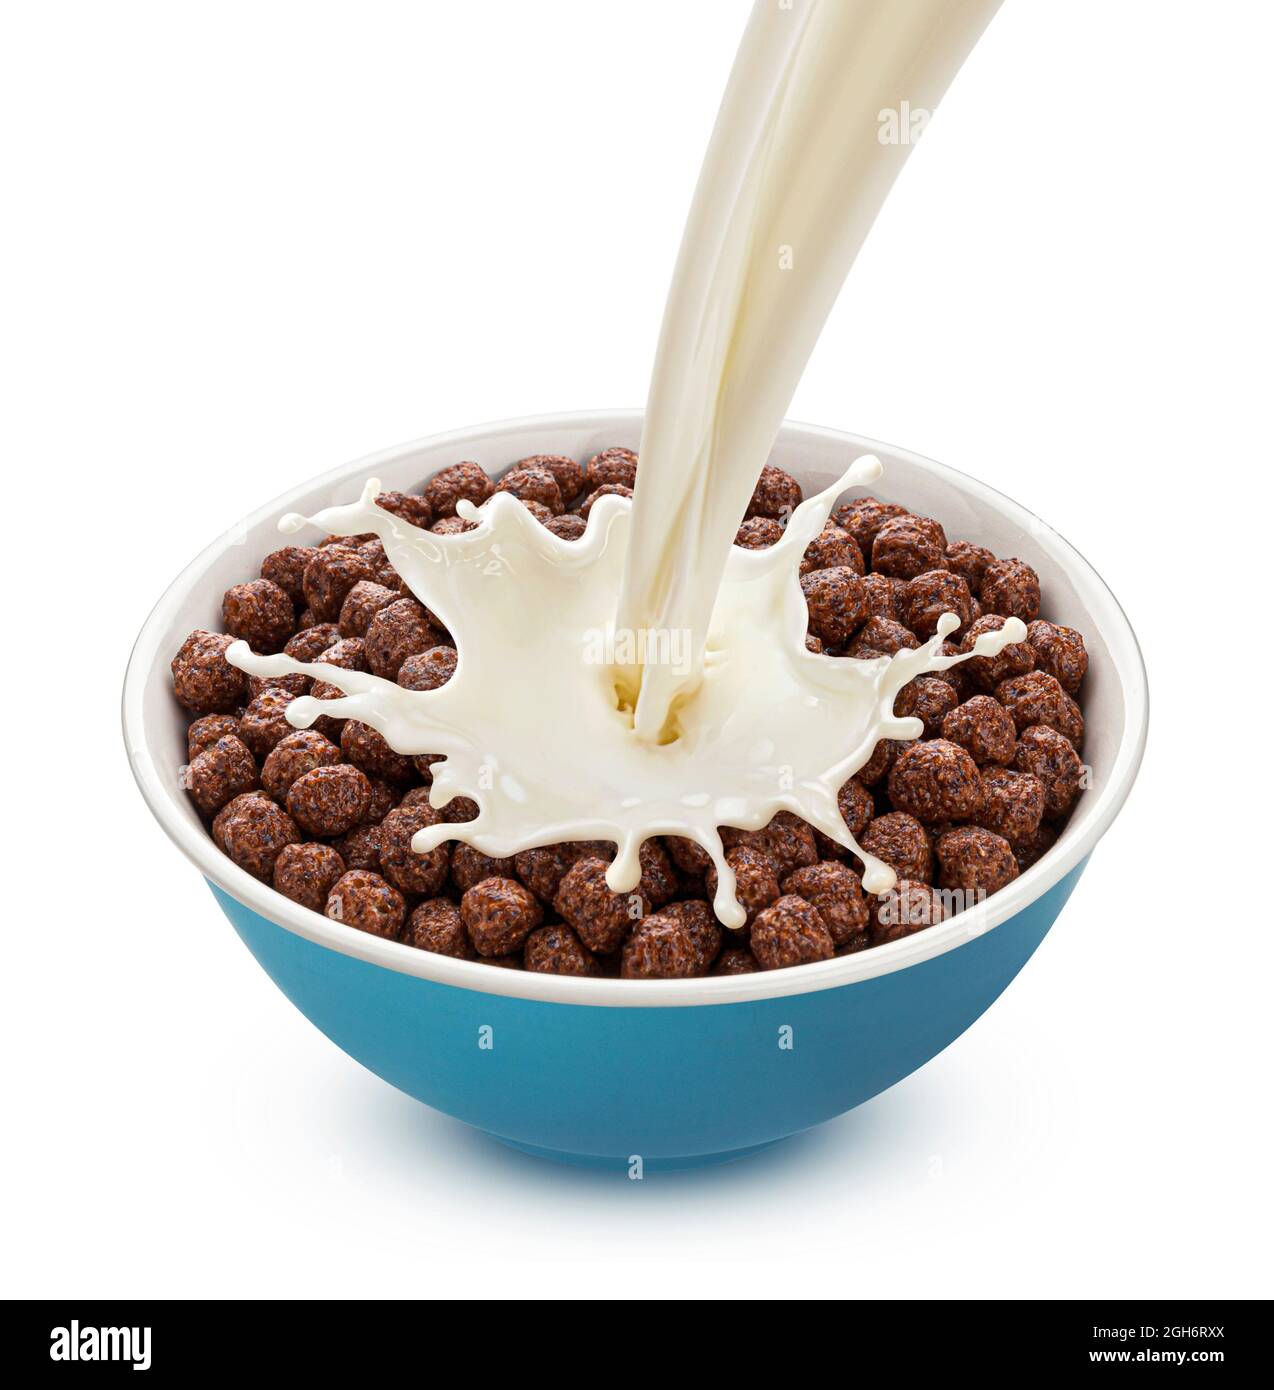 Boules de maïs au chocolat avec lait versé isolé sur fond blanc Banque D'Images